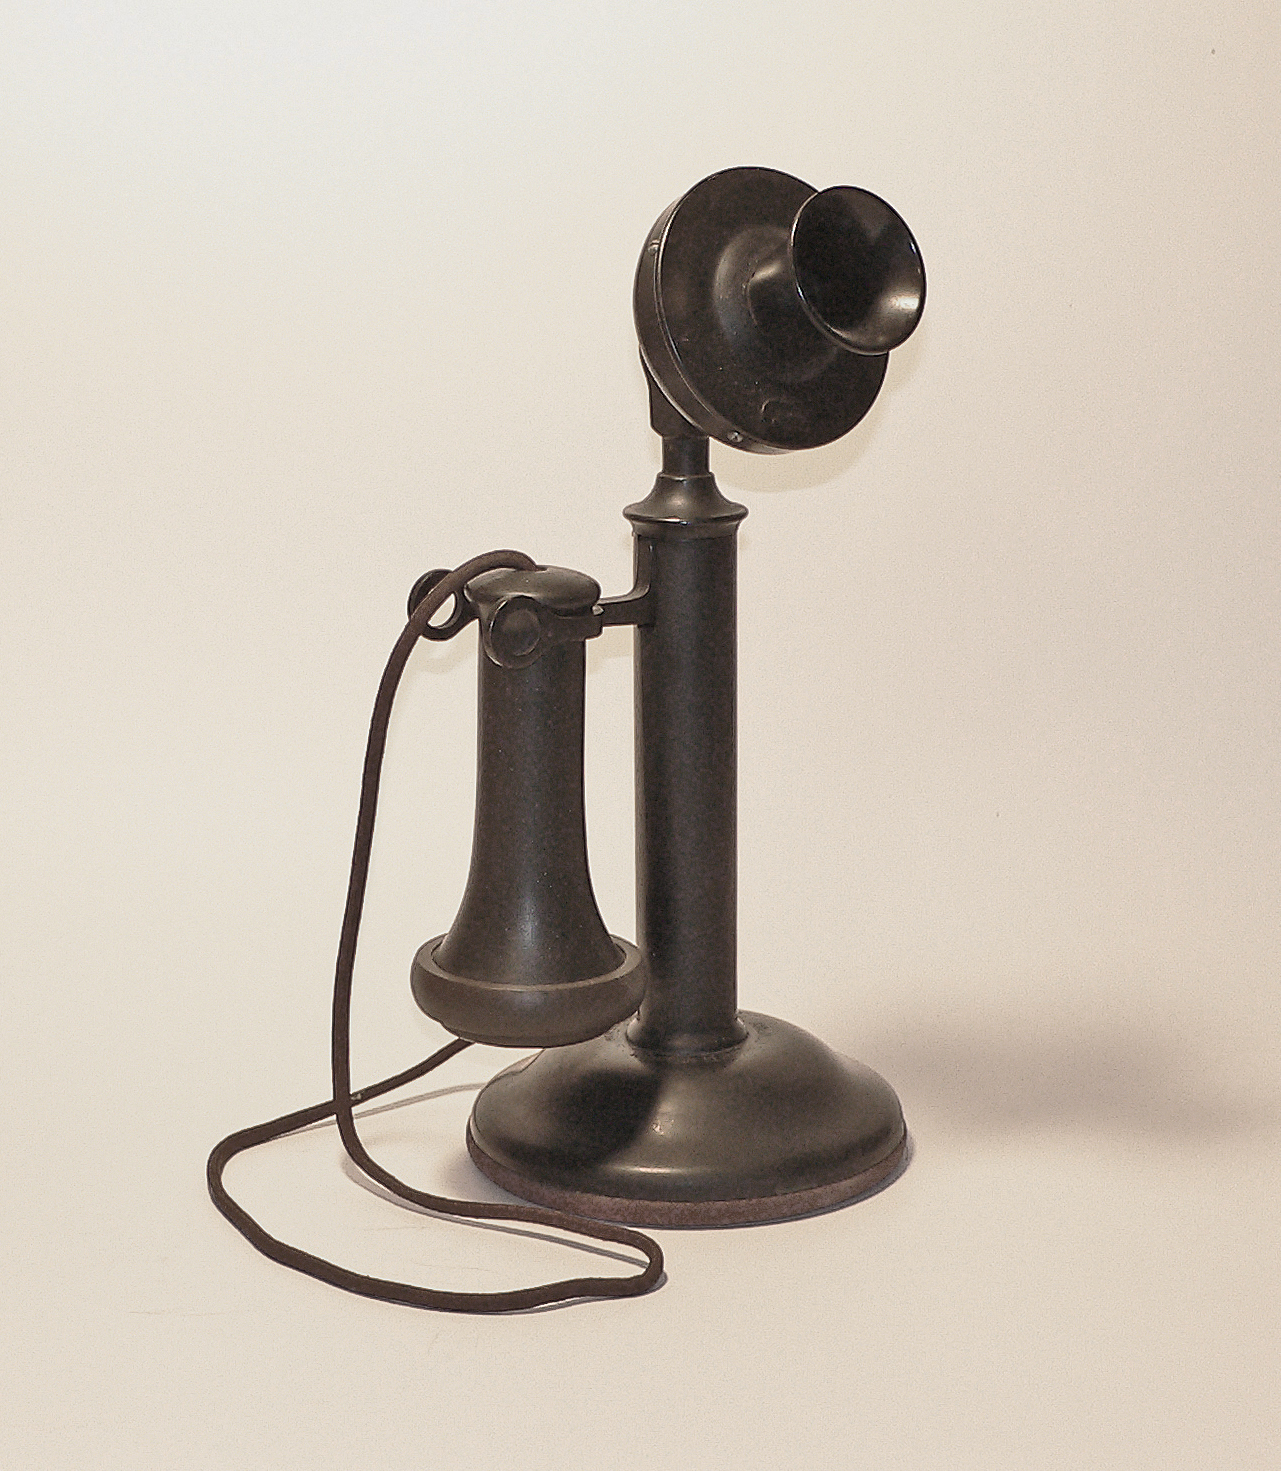 An original telephone. No dial.